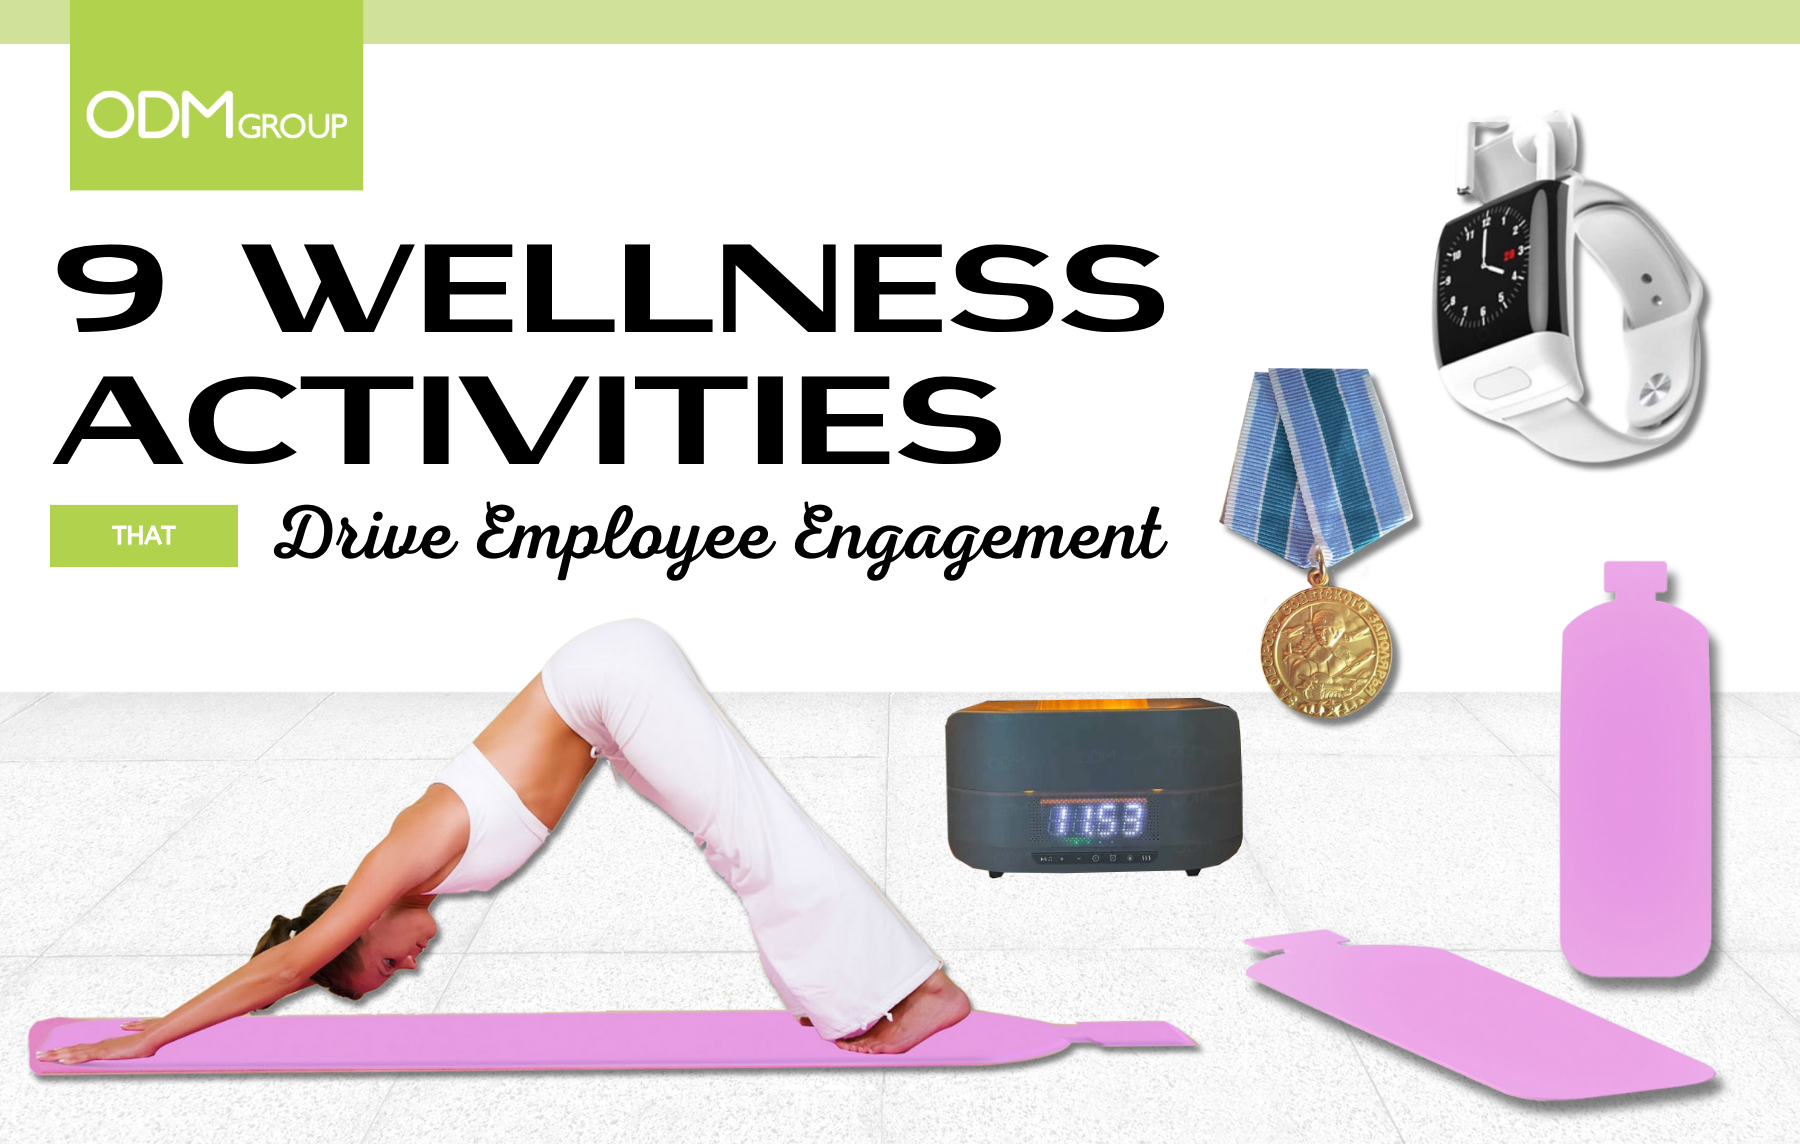 Wellnes Activities for Employees